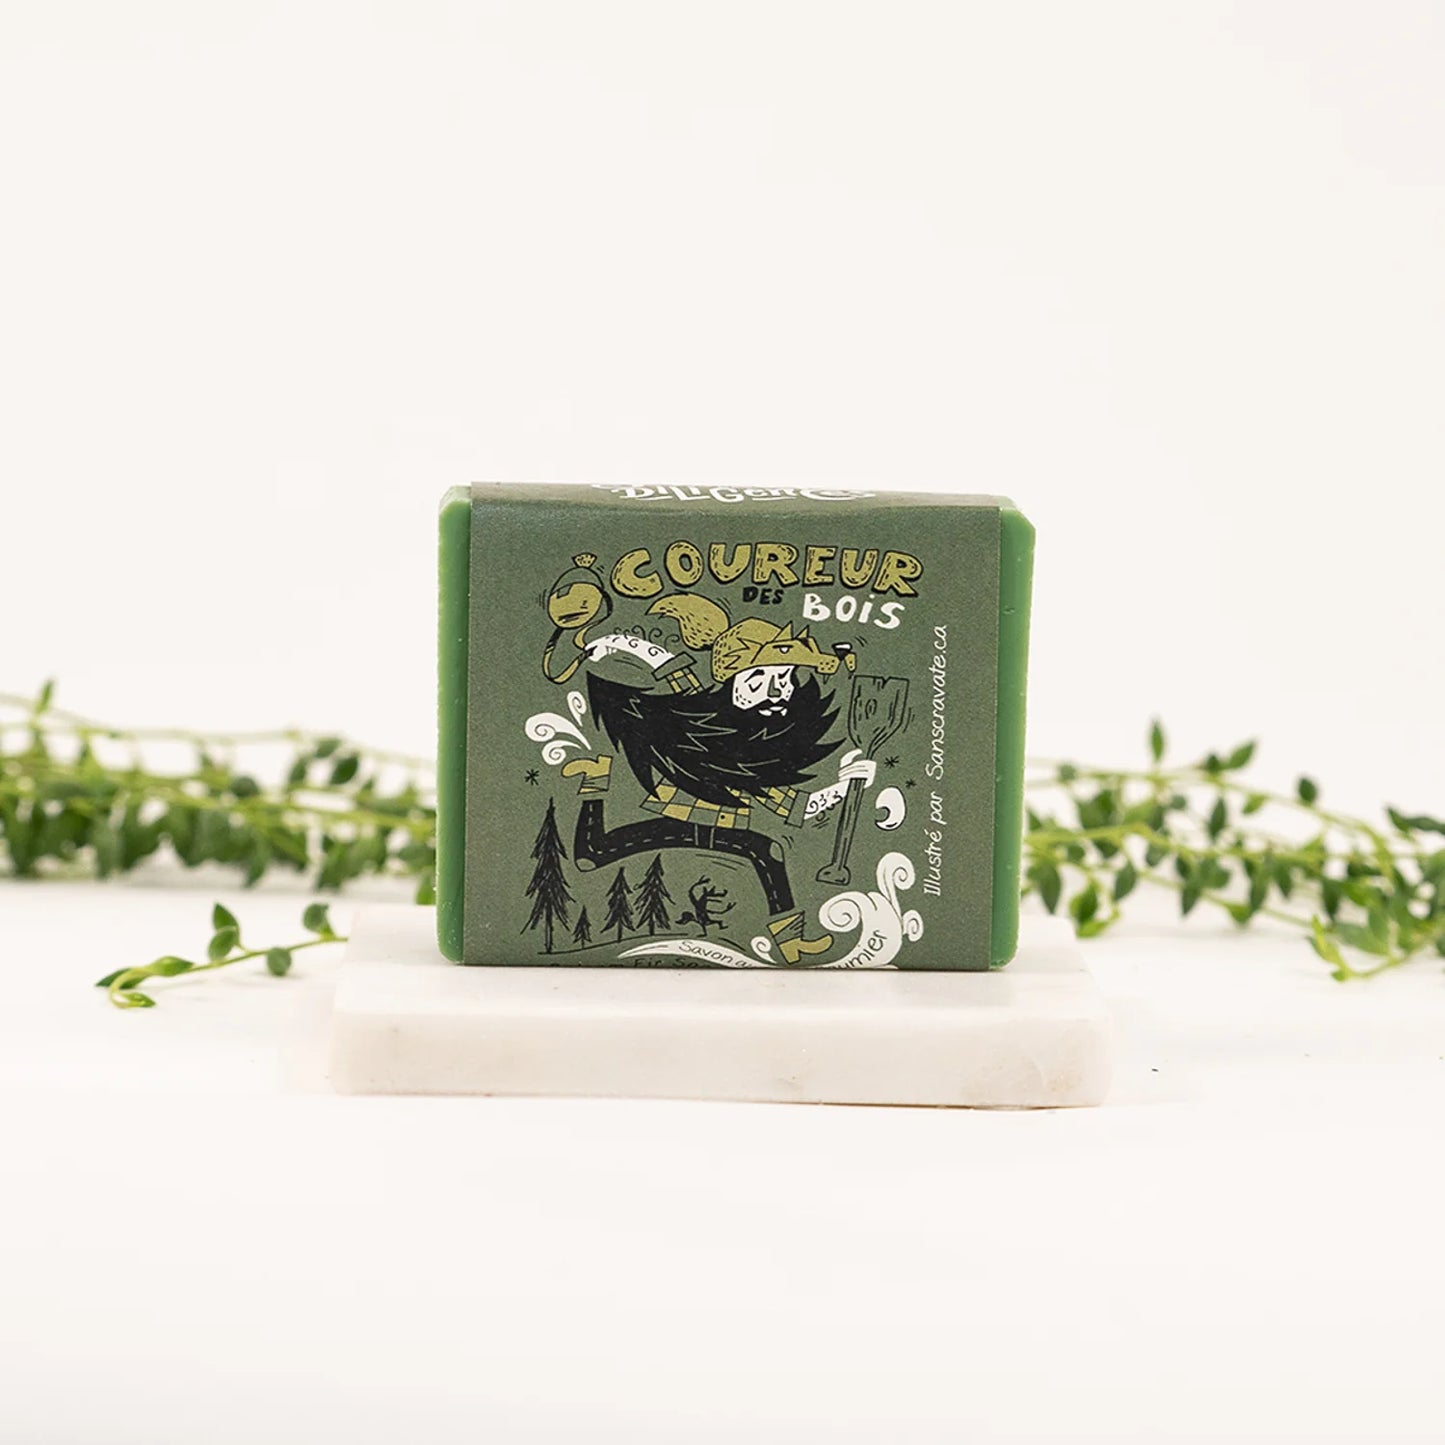 Le Coureur des Bois soap, 100 gr.